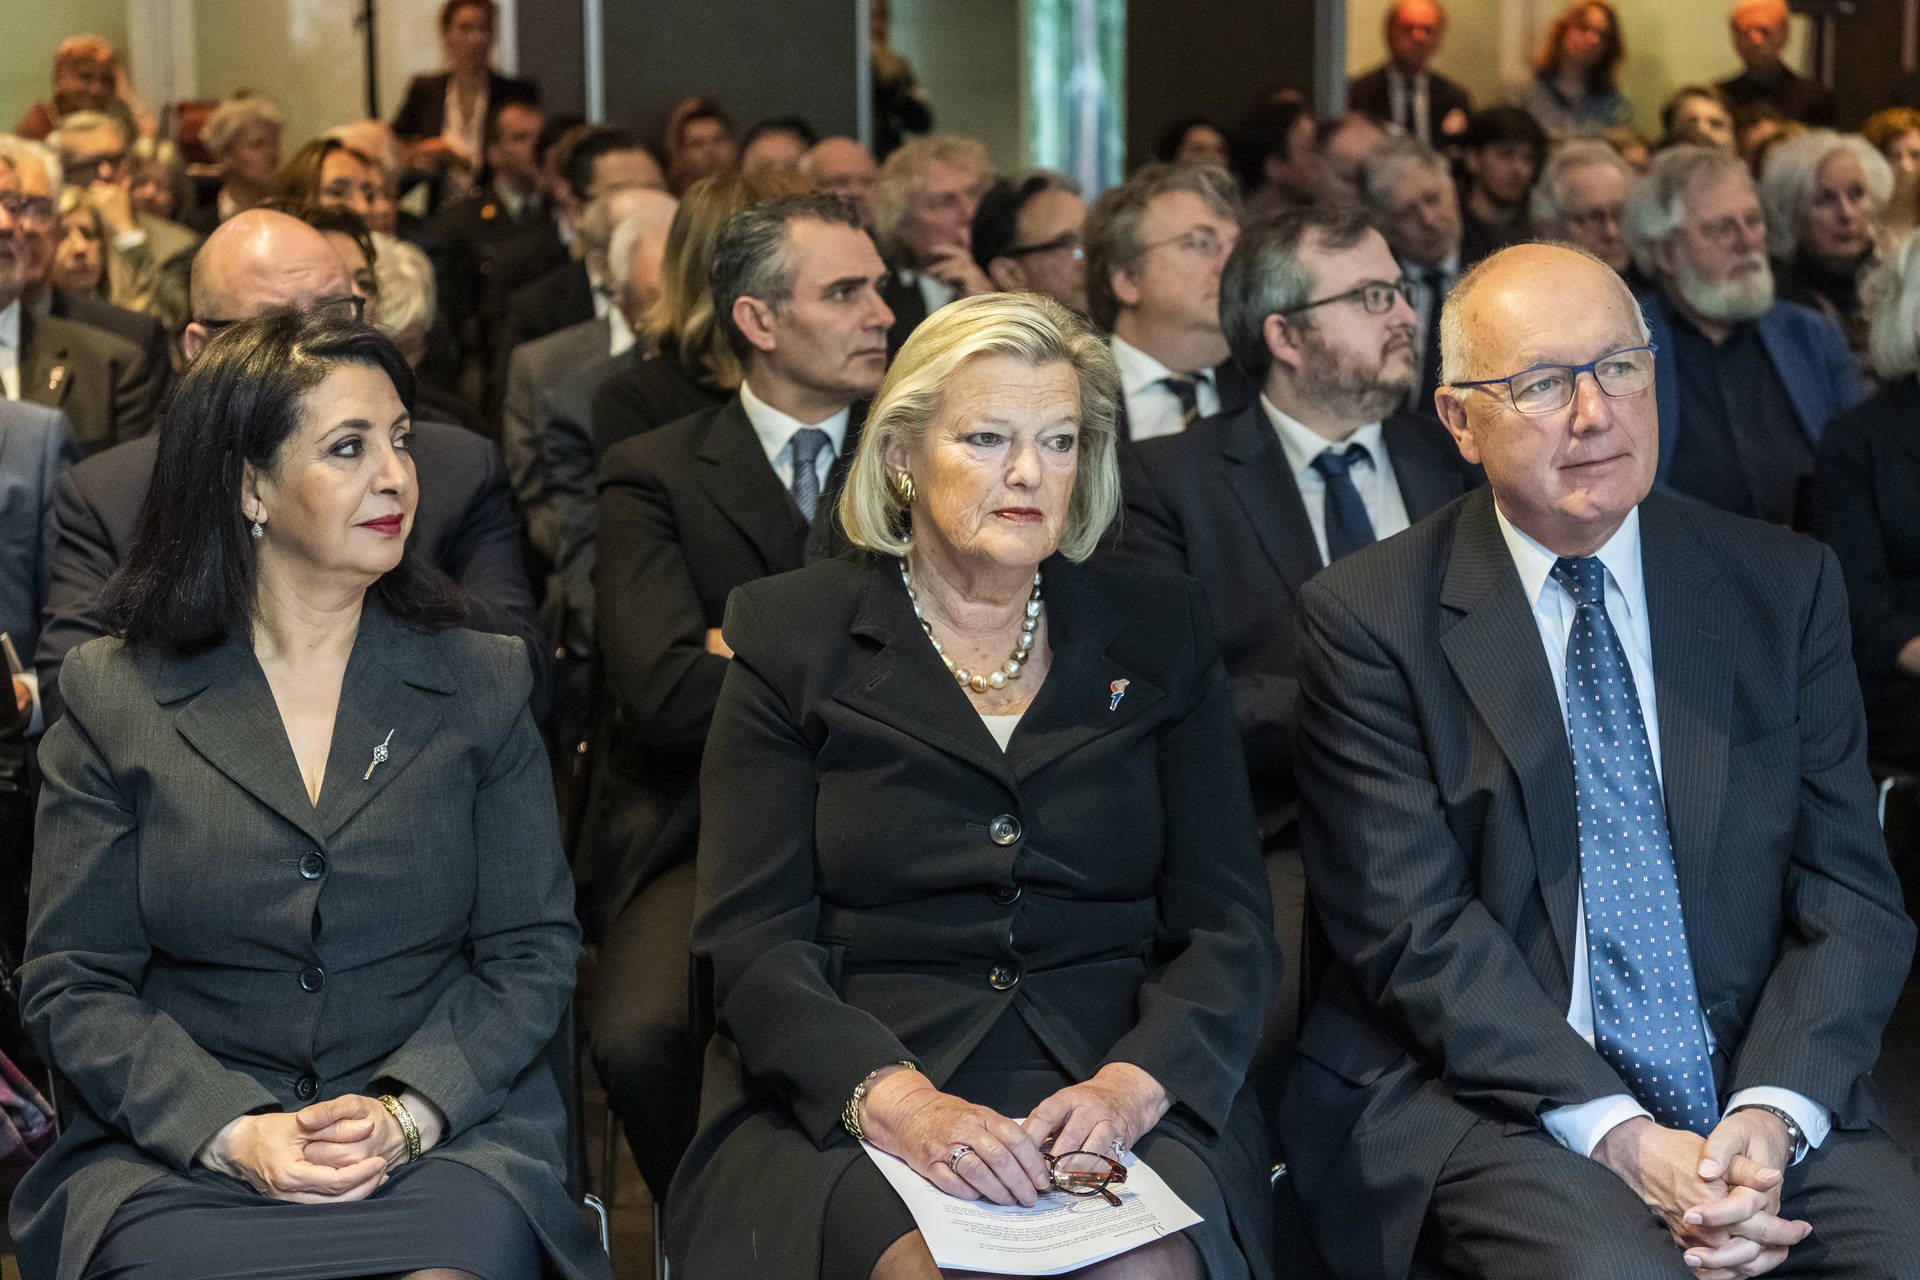 Vlnr: Tweede Kamervoorzitter Arib, Eerste Kamervoorzitter Broekers-Knol en VS-ambassadeur Hoekstra